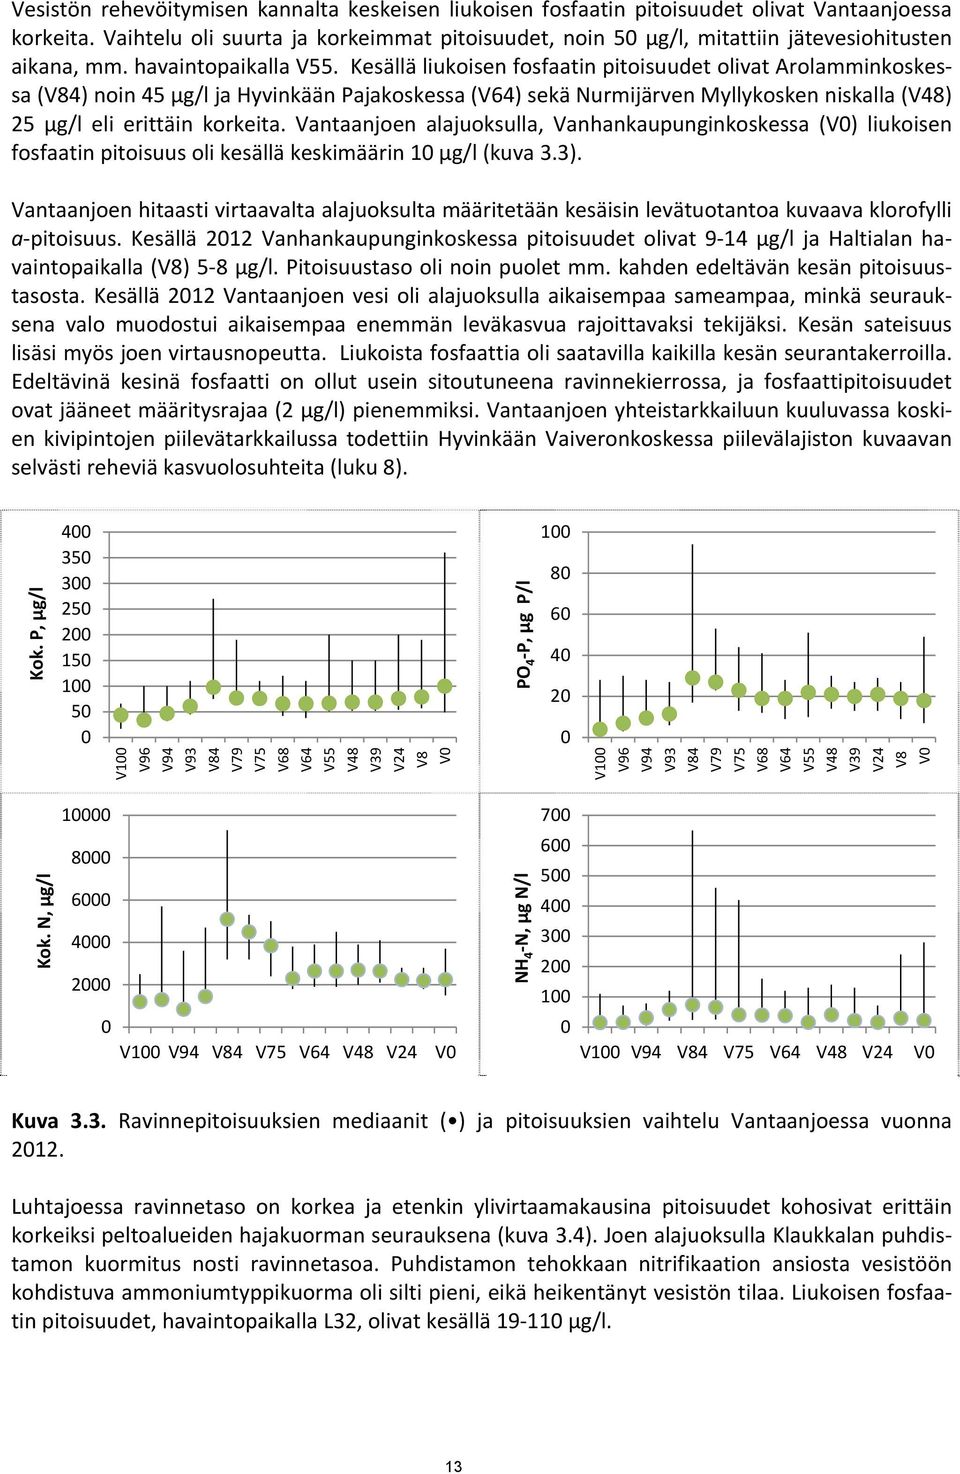 Kesällä liukoisen fosfaatin pitoisuudet olivat Arolamminkoskessa (V84) noin 45 µg/l ja Hyvinkään Pajakoskessa (V64) sekä Nurmijärven Myllykosken niskalla (V48) 25 µg/l eli erittäin korkeita.